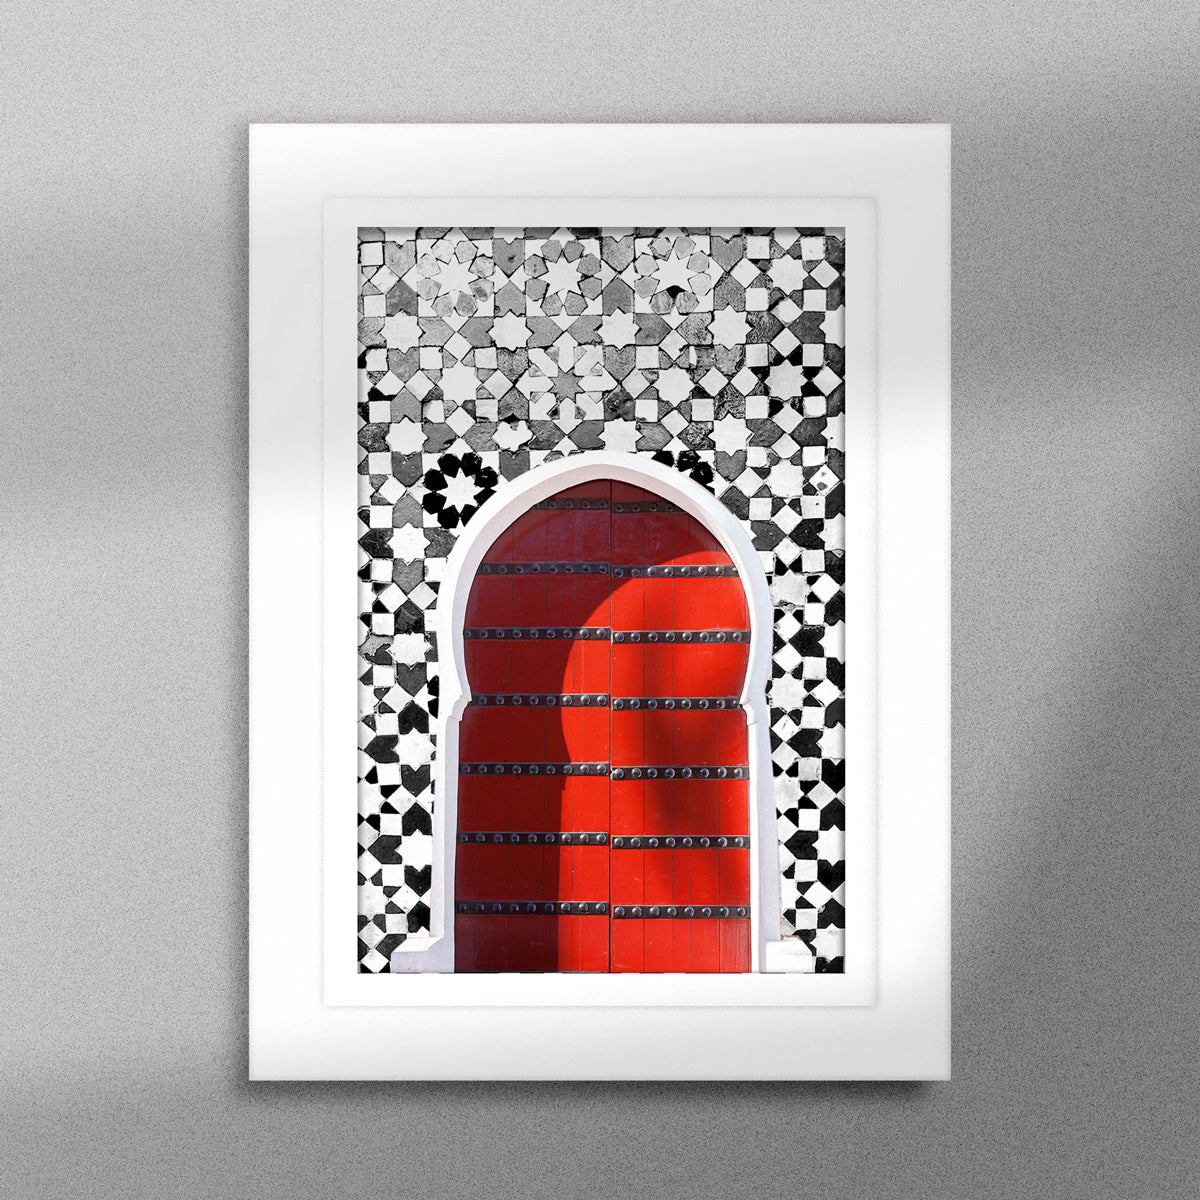 Tableau décoratif d'une porte marocaine en rouge, sur un fond de zellige marocain en noir et blanc, encadré dans un cadre en blanc - Format A5